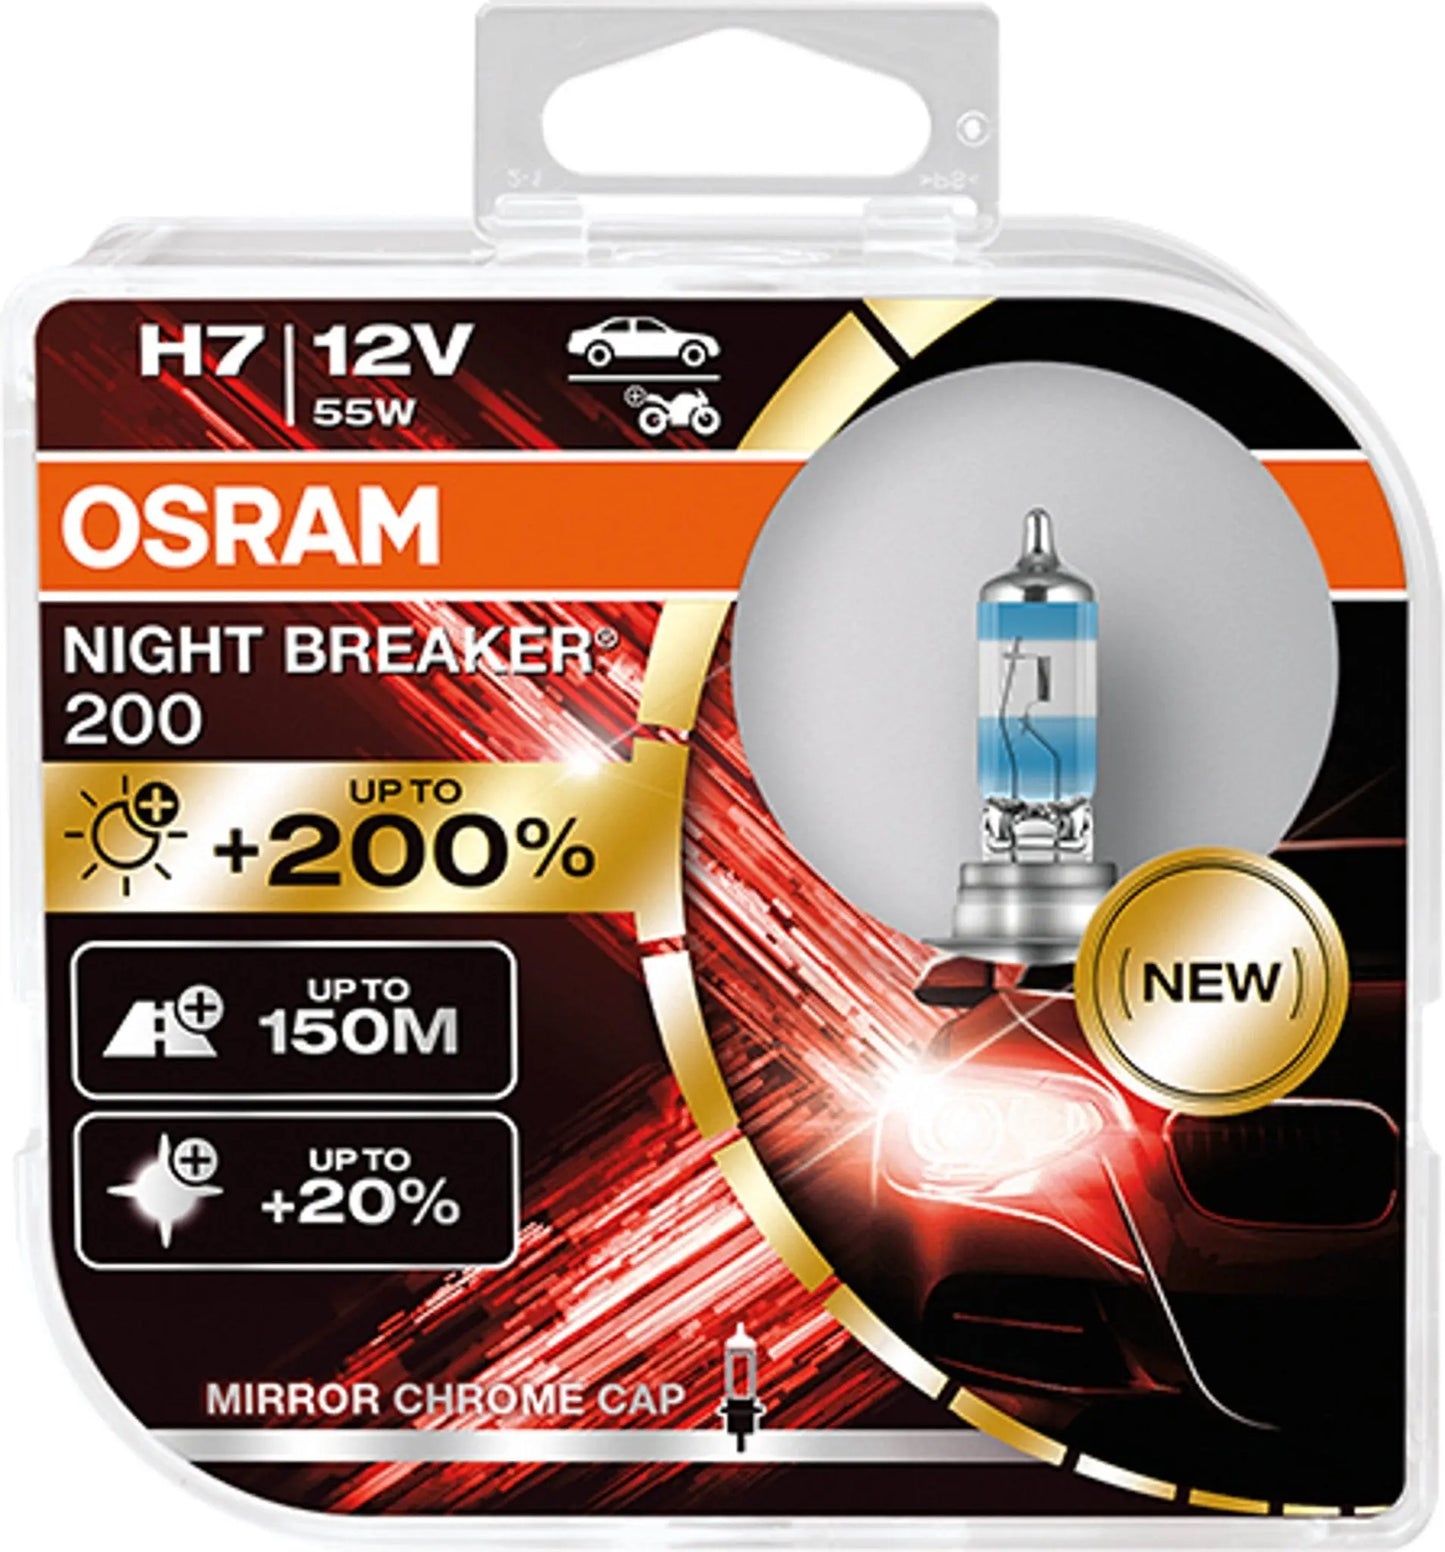 H7 12V NIGHT BREAKER 200 bis zu 200% mehr Licht 2St OSRAM - Samsuns Group